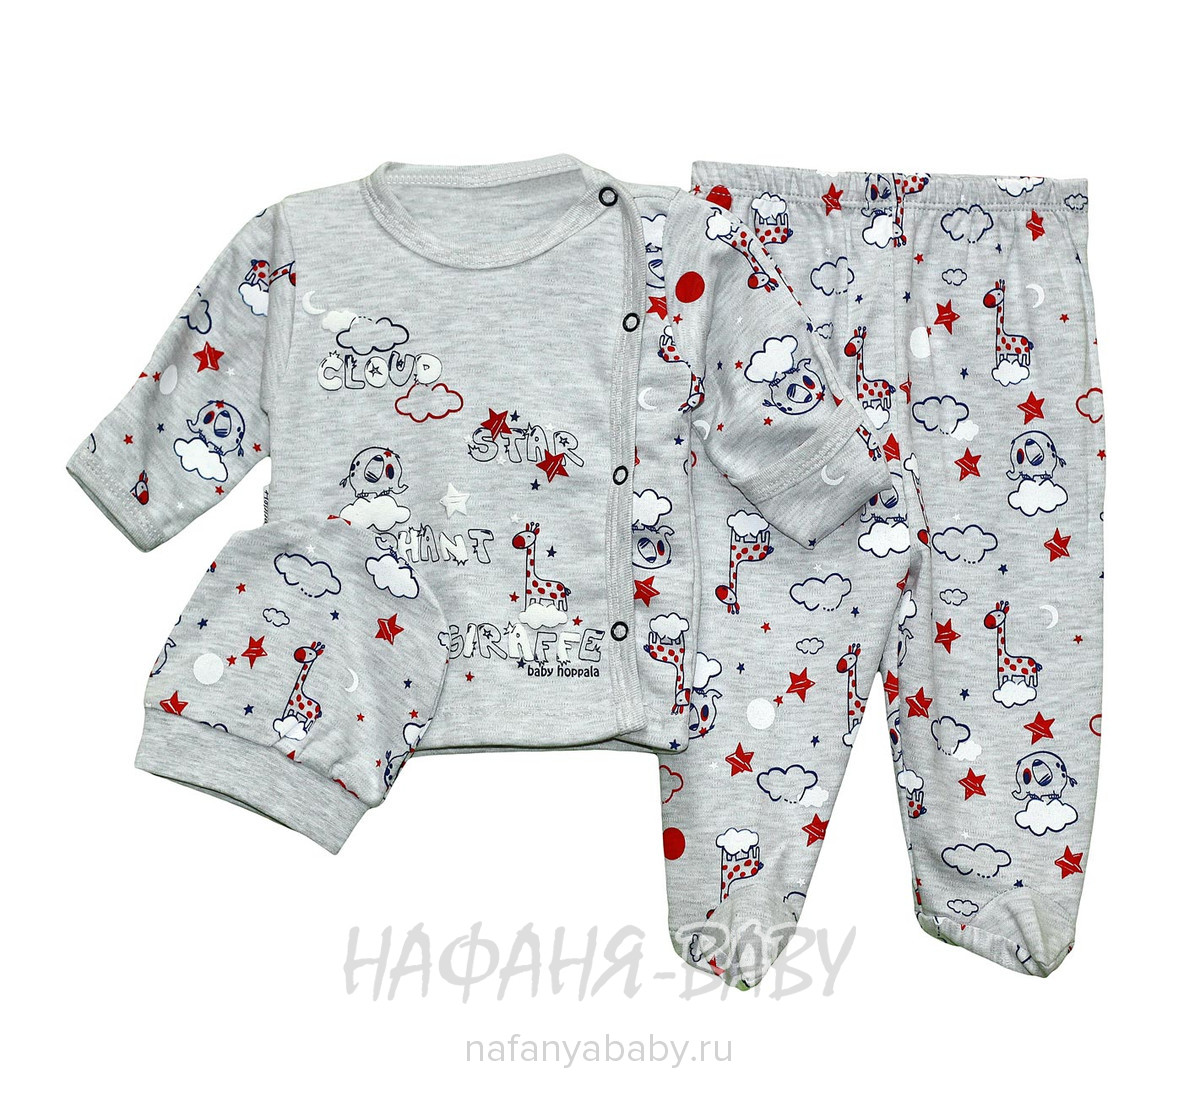 Детский комплект для новорожденных Hoppola арт: 8846, 0-12 мес, оптом Турция